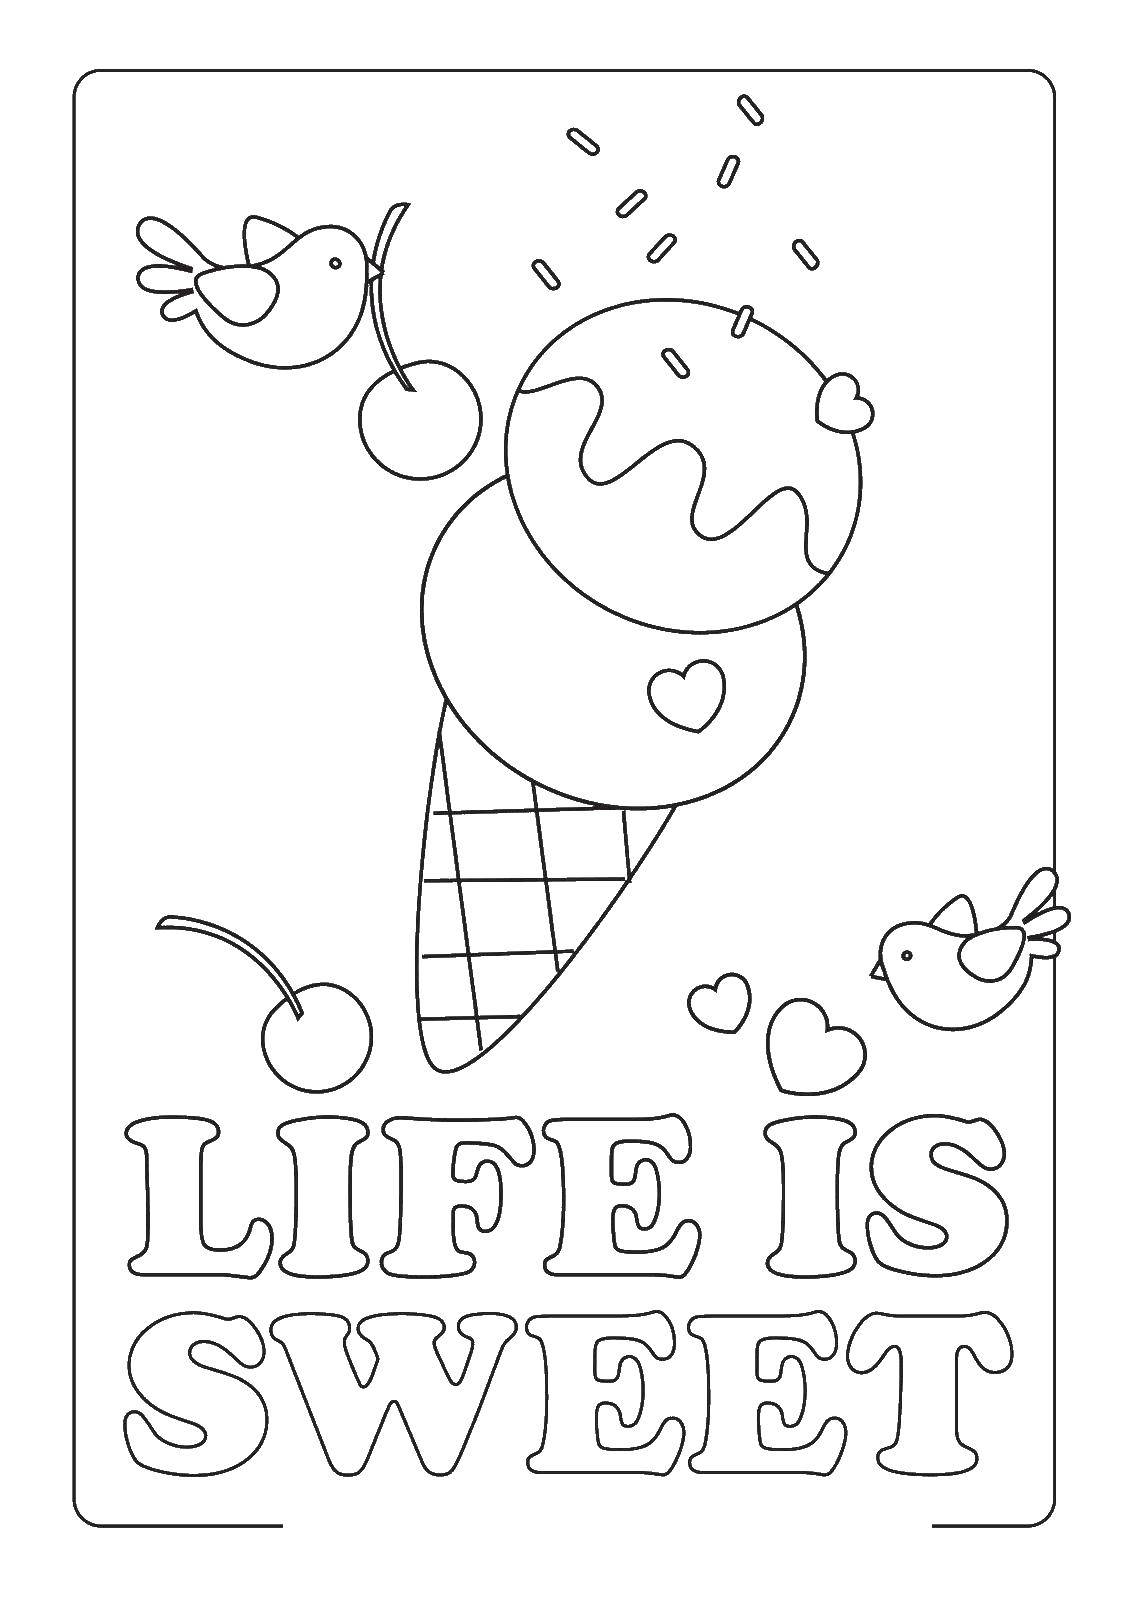 Название: Раскраска Птицы украшают мороженое. Категория: мороженое. Теги: мороженое, шариковое мороженое.